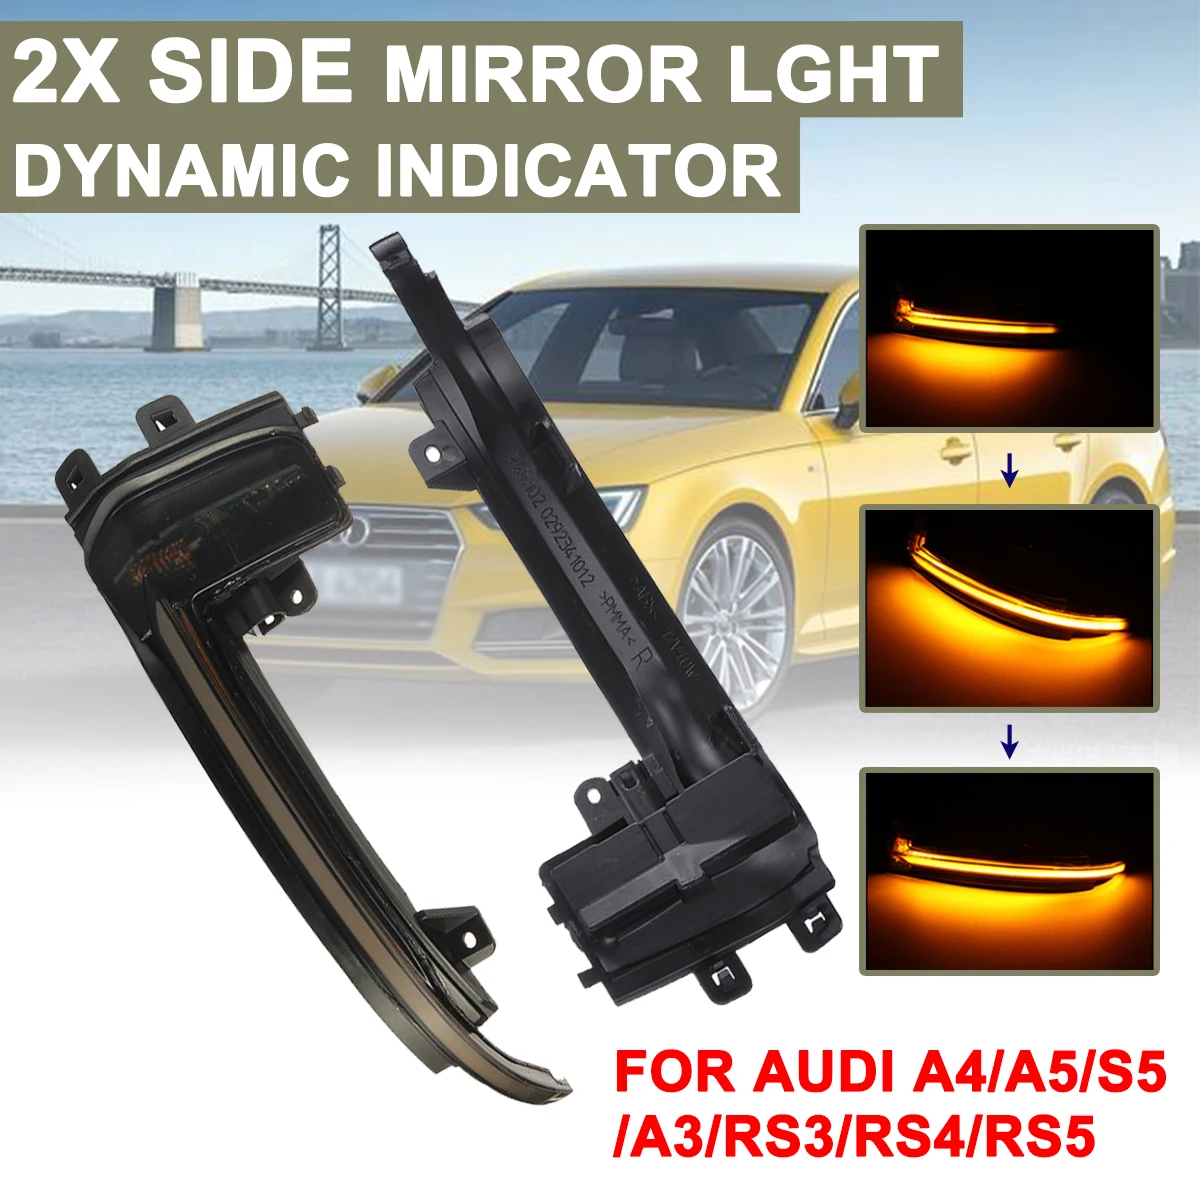 

Автомобильная динамическая Поворотная лампа для зеркала заднего вида, сигнальная лампа, светодиодный желтый свет для Audi A4 S4 B8.5 8K,A5 S5 B8.5 8T ...